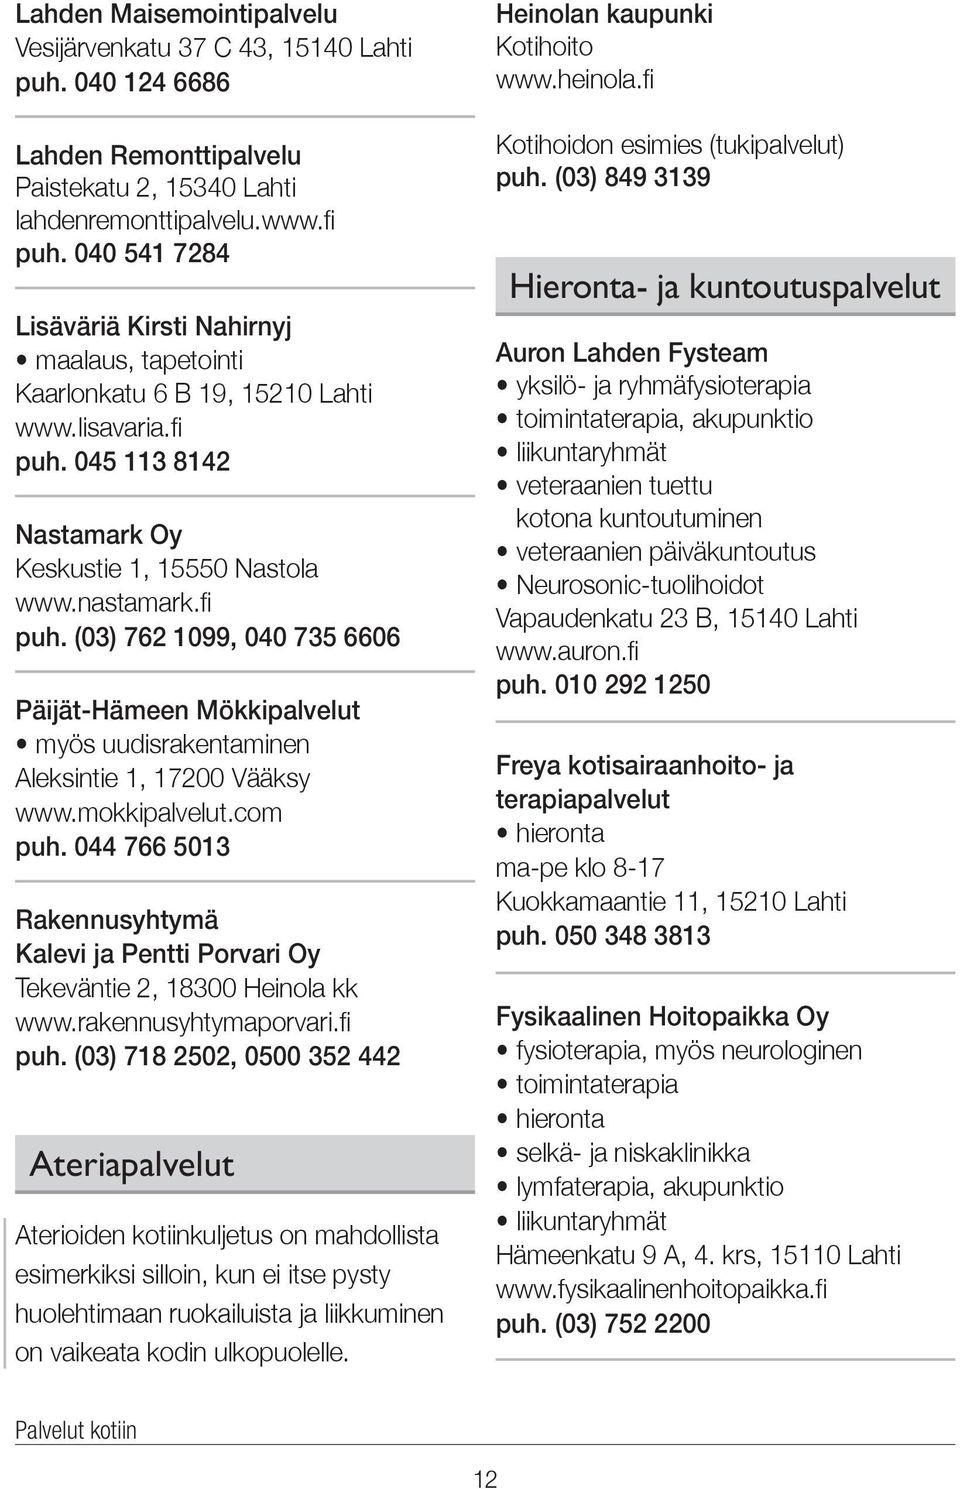 045 113 8142 Nastamark Oy Keskustie 1, 15550 Nastola www.nastamark.fi puh. (03) 762 1099, 040 735 6606 Päijät-Hämeen Mökkipalvelut myös uudisrakentaminen Aleksintie 1, 17200 Vääksy www.mokkipalvelut.